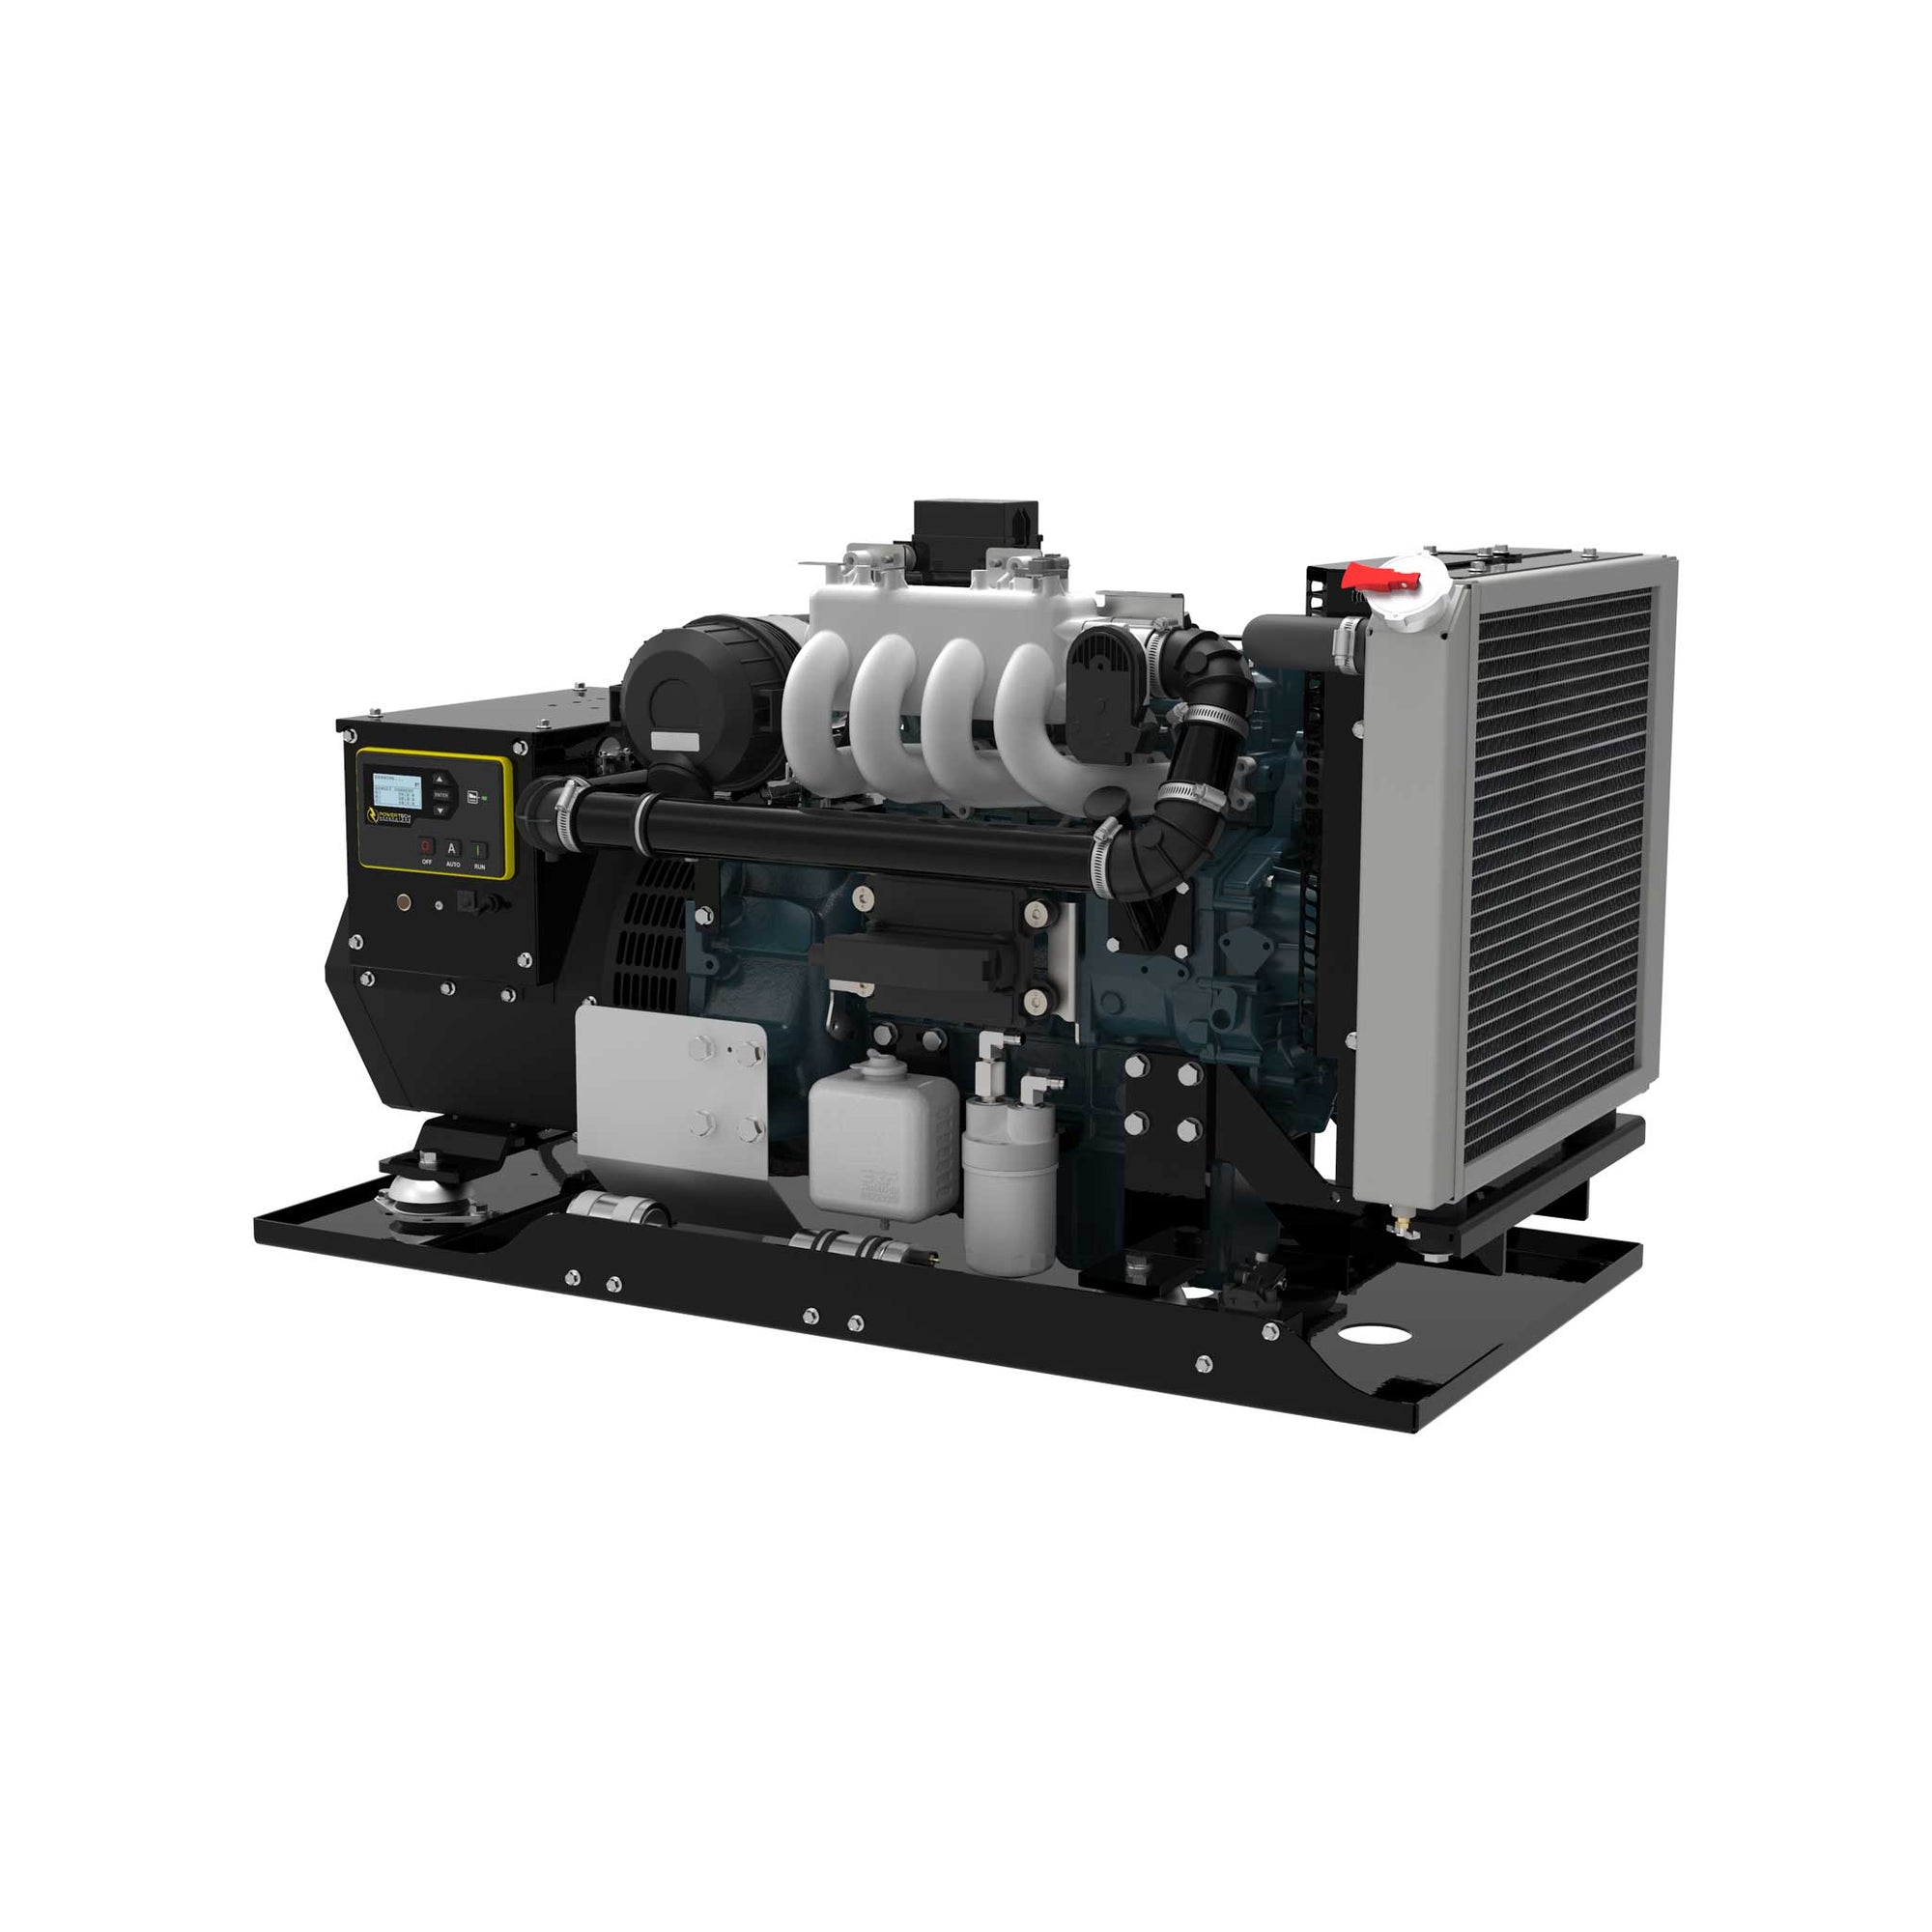 PTGK-15 - 15 kW Gas Diesel Generator 